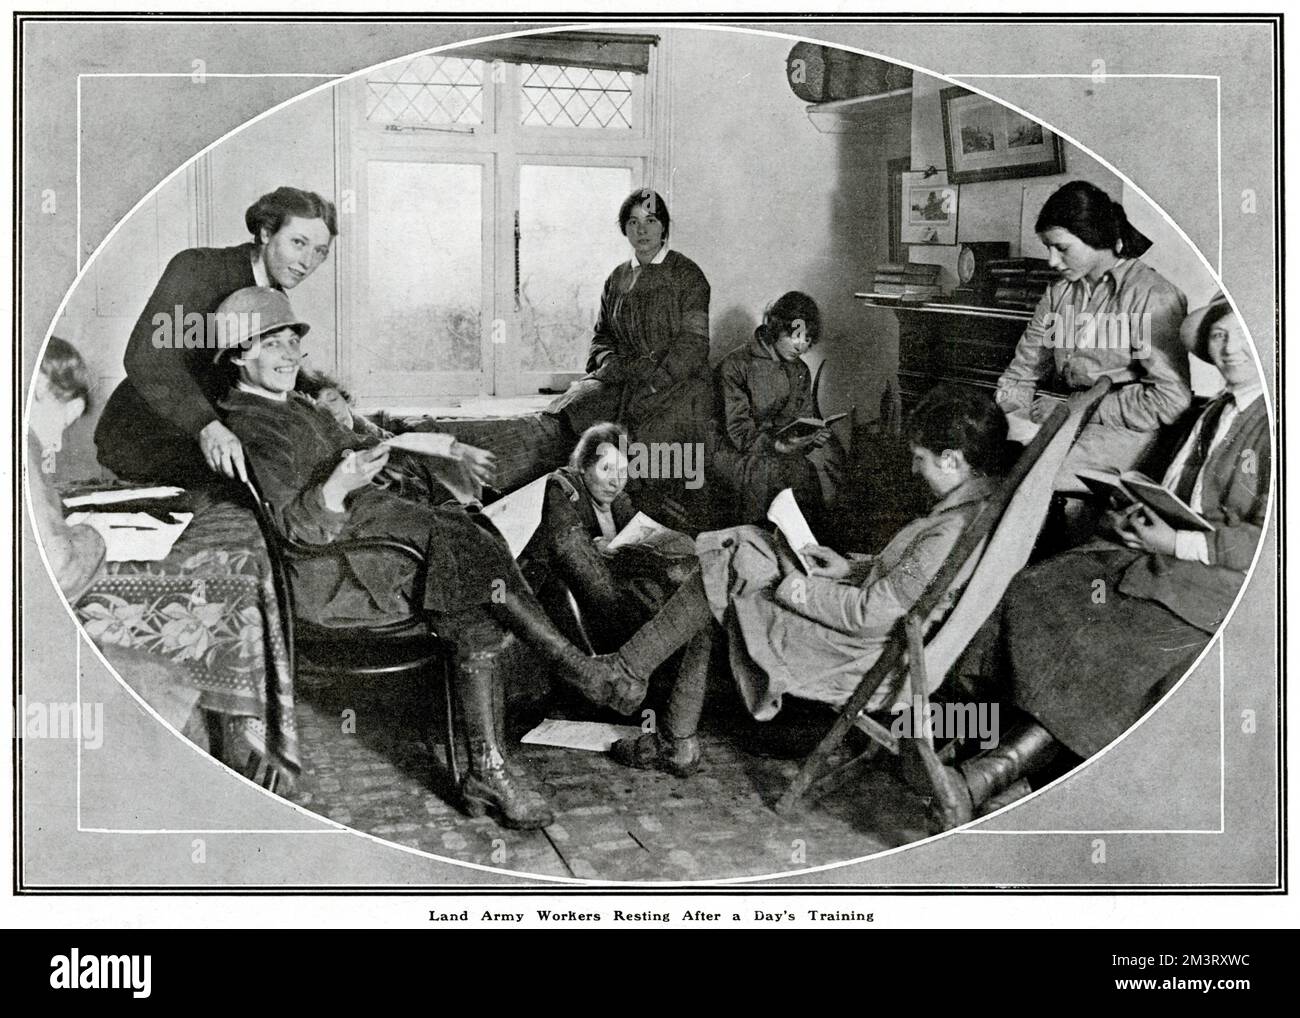 Les femmes de Theydon, Essex, se reposer, socialiser et lire dans leur salle de club après une journée d'entraînement pour le travail de l'armée de terre. L'Armée de terre des femmes a été créée en 1917 pour remplacer les travailleurs masculins de l'agriculture lorsqu'ils se battaient pendant la première Guerre mondiale. Date: 1918 Banque D'Images